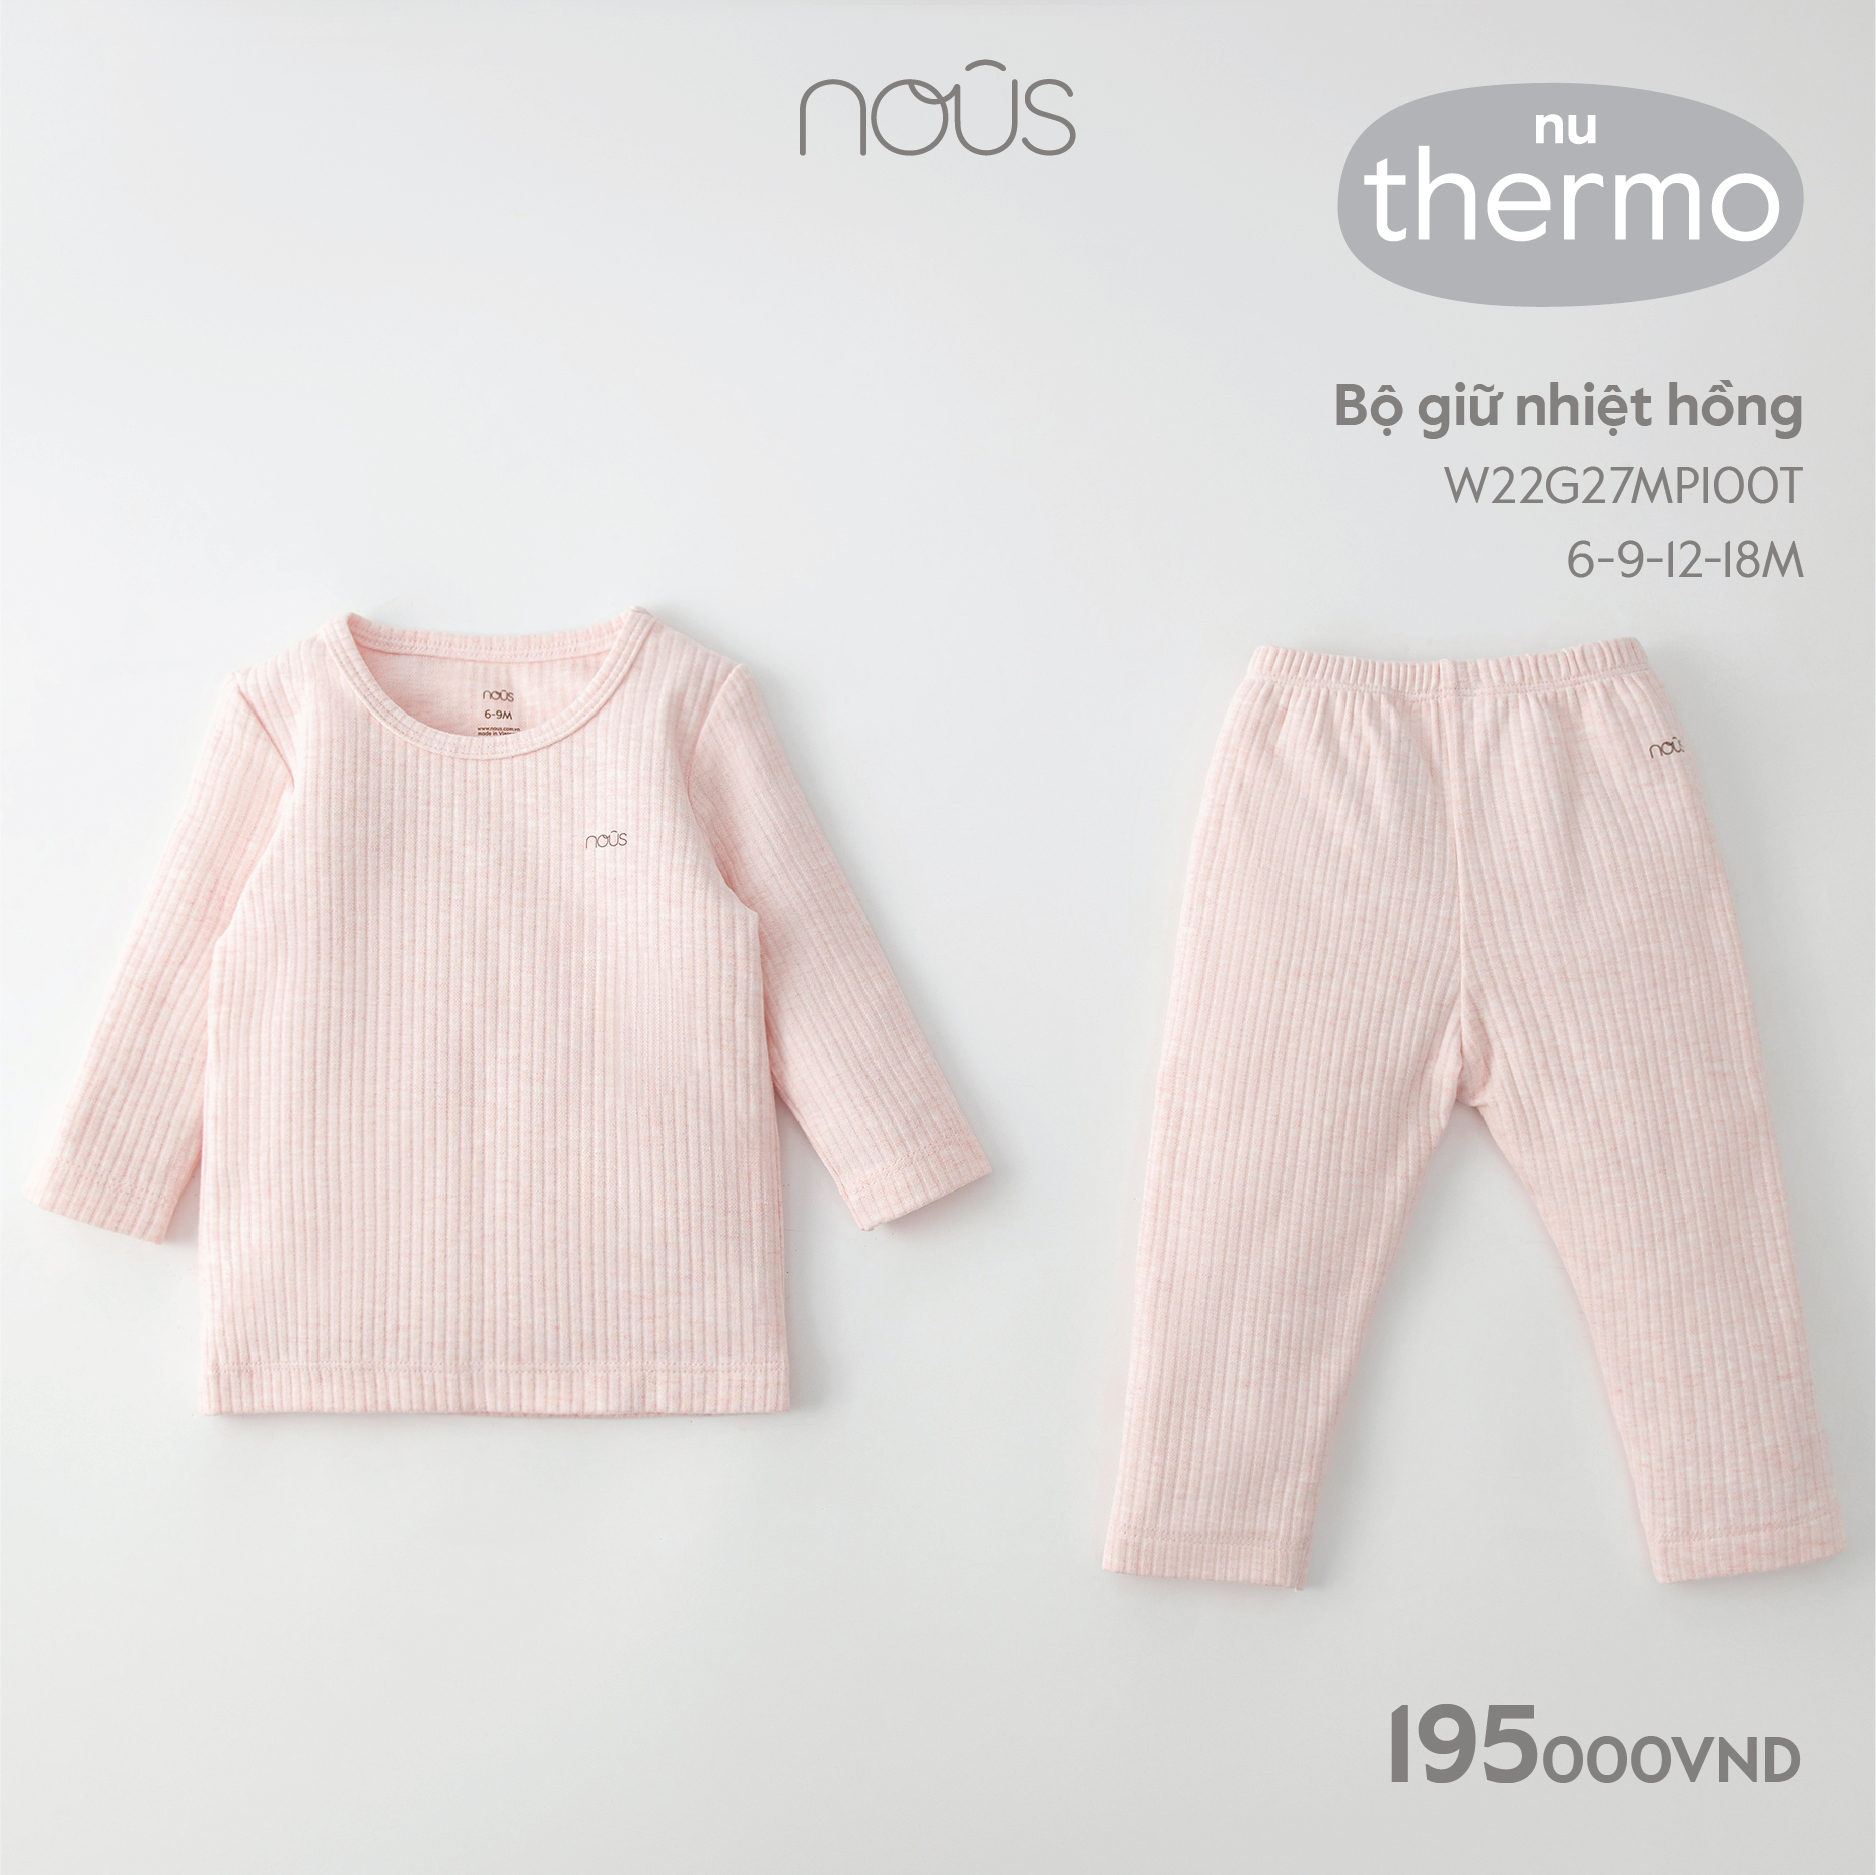 Bộ quần áo giữ nhiệt Nous hồng, xanh lá cho bé trai, bé gái chất liệu Nu thermo ( size từ 6 - 24 tháng )